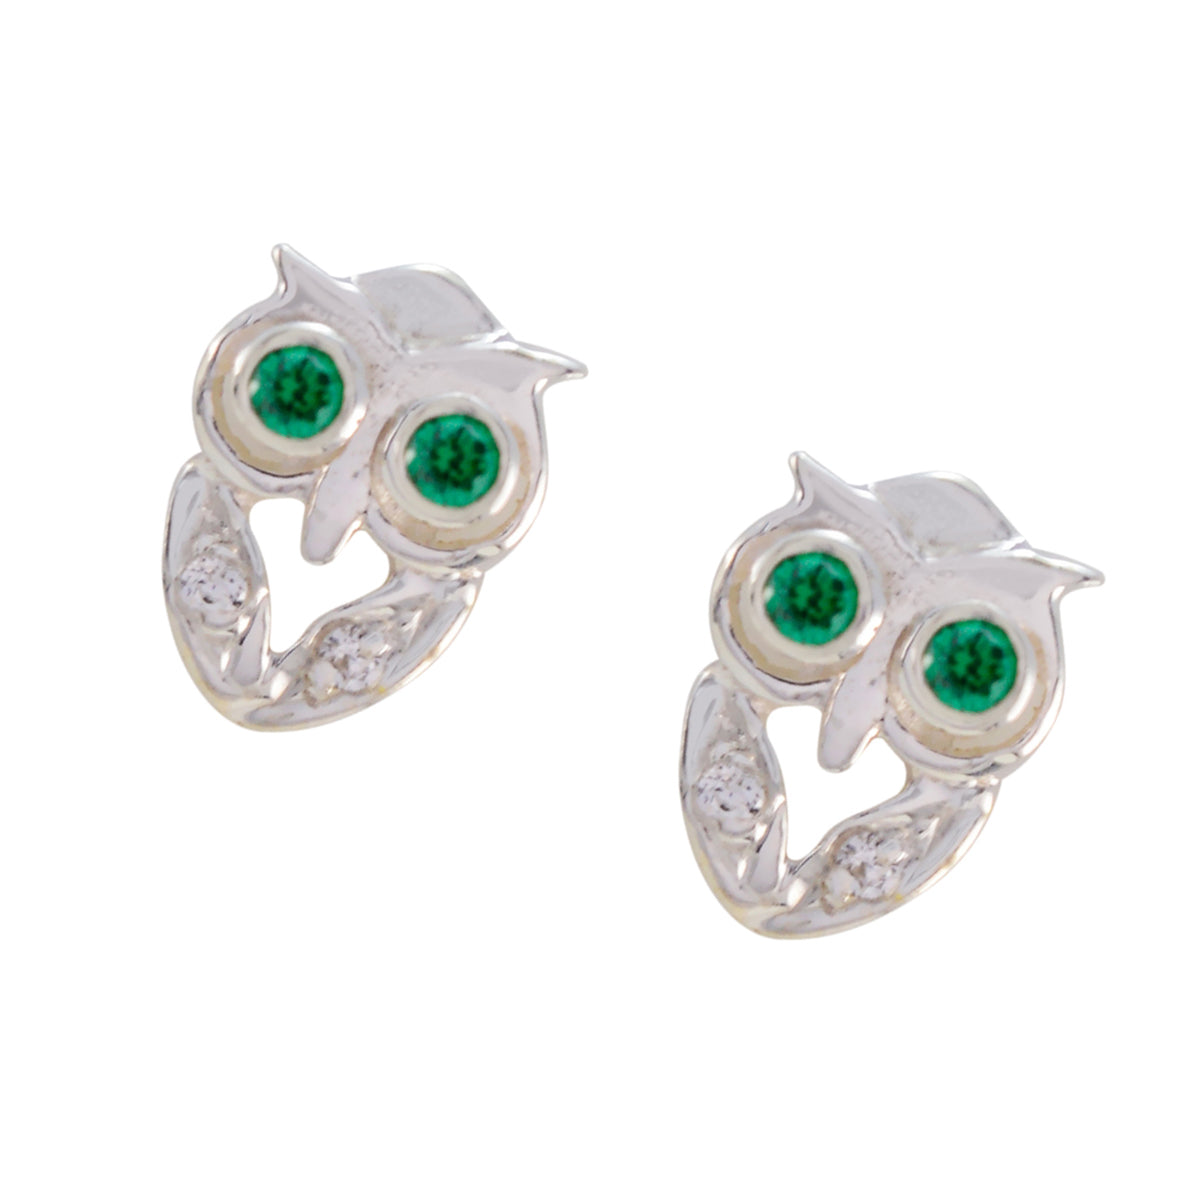 Riyo jolie boucle d'oreille en argent sterling 925 pour dame vert cz boucle d'oreille réglage de la lunette boucle d'oreille verte boucle d'oreille